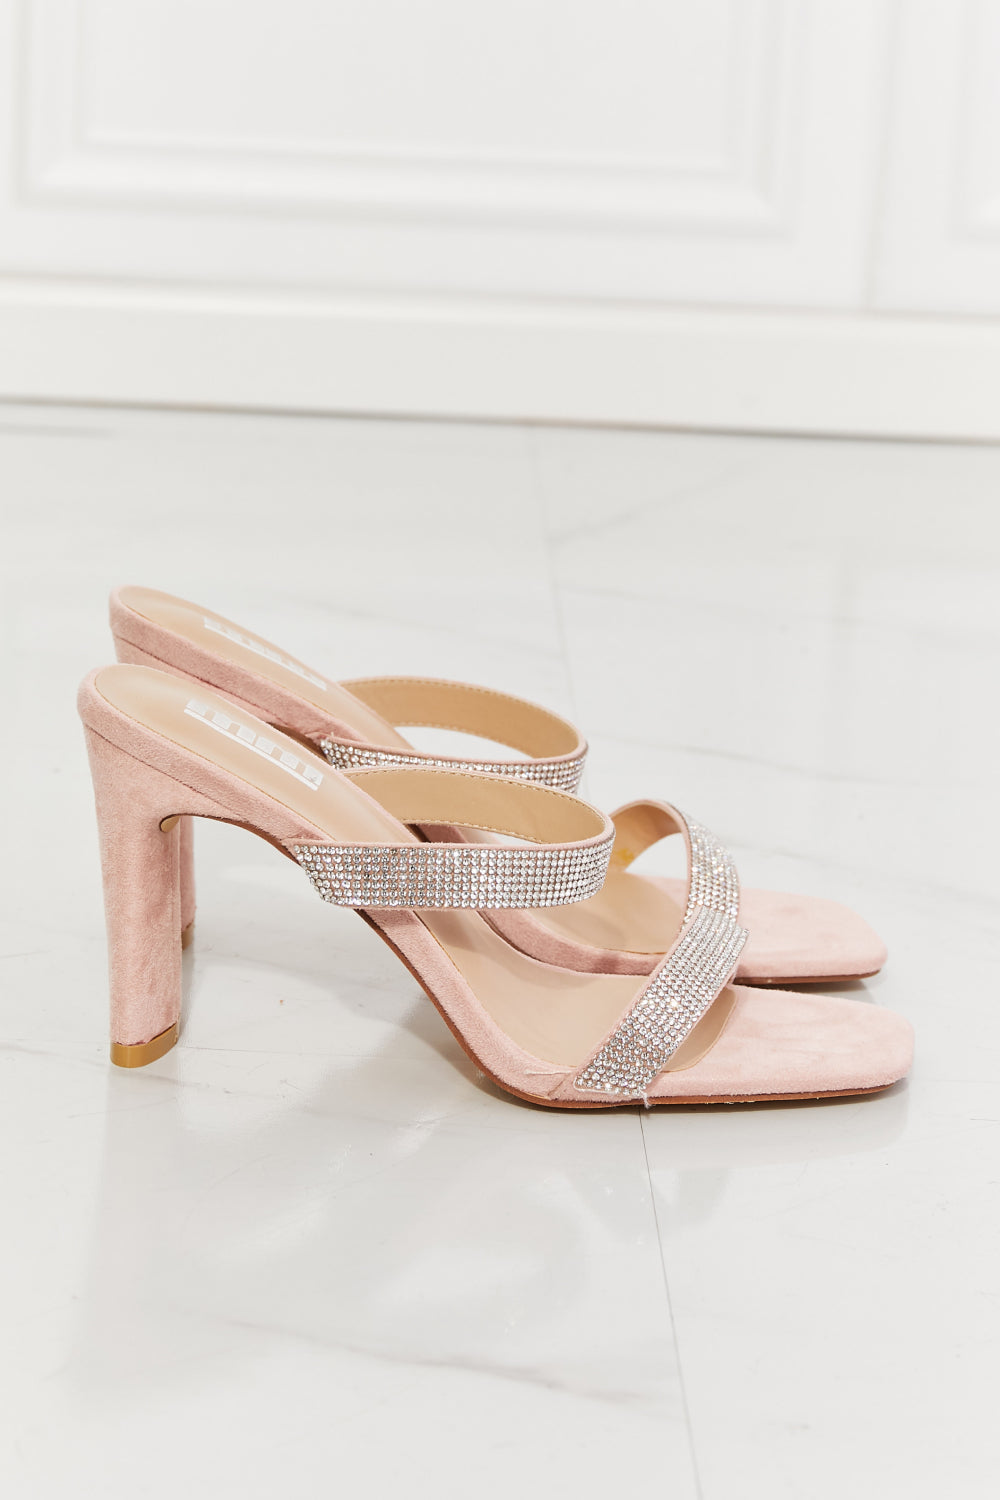 Women's Rhinestone Block Heel Sandal in Pink | Tigbul's Fashion